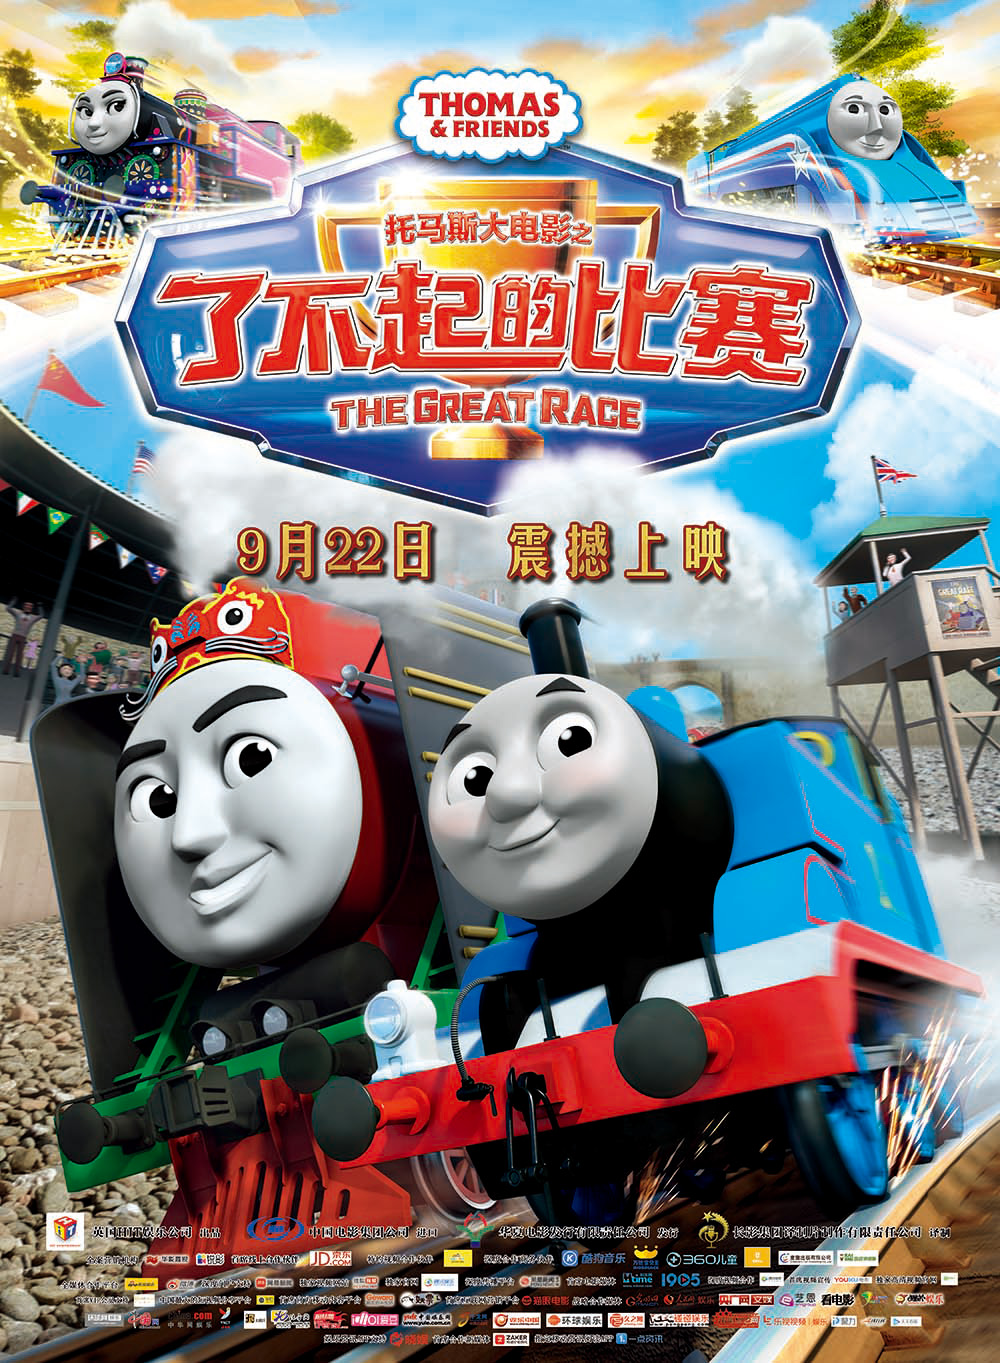 托马斯大电影之了不起的比赛 - Thomas & Friends: The Great Race